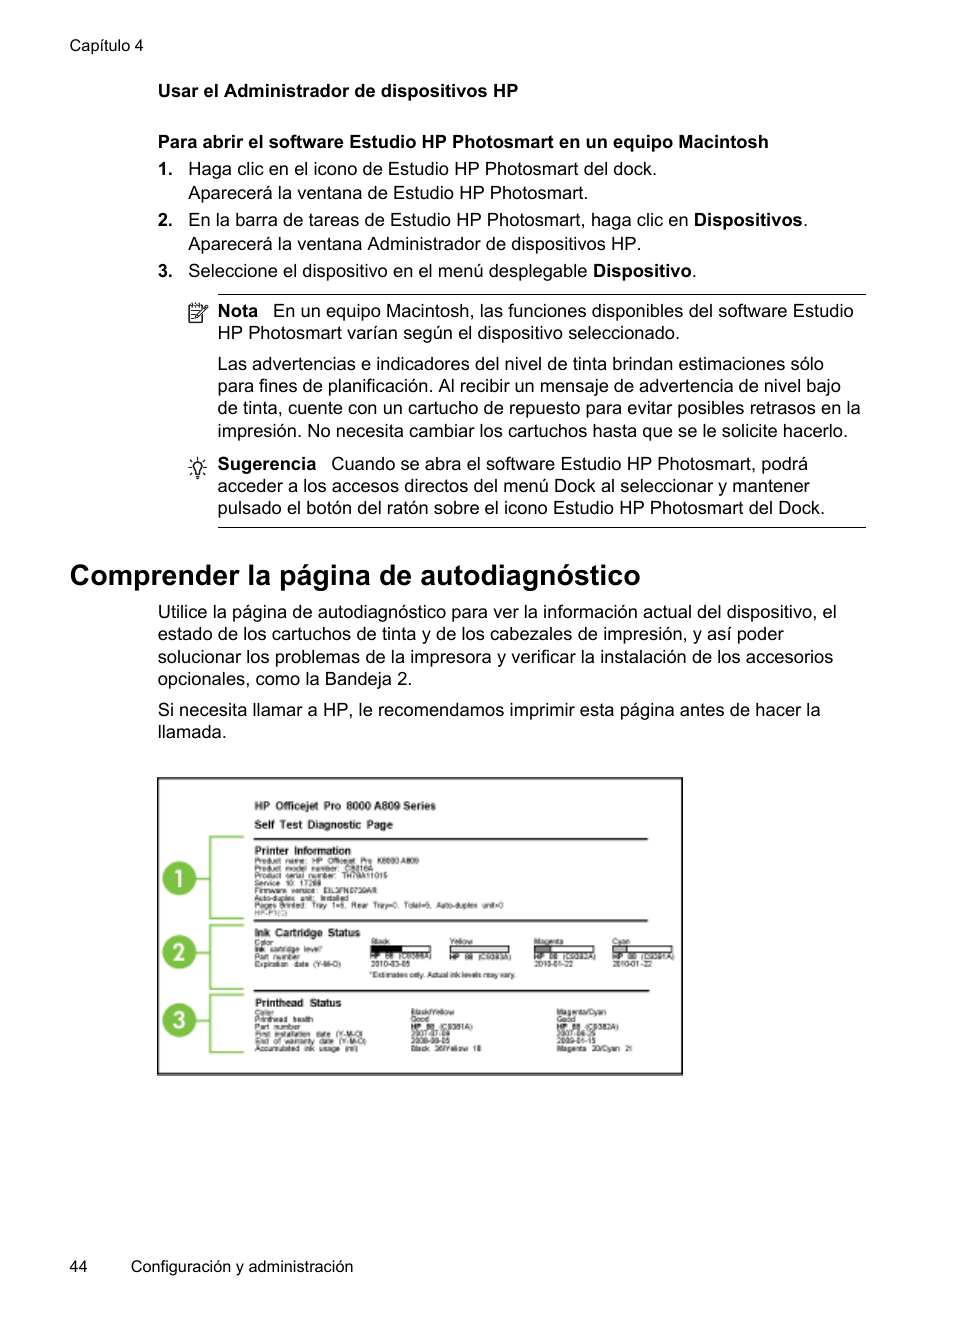 Usar el administrador de dispositivos hp, Comprender la página de autodiagnóstico | HP Officejet Pro 8000 - A809 Manual del usuario | Página 48 / 150